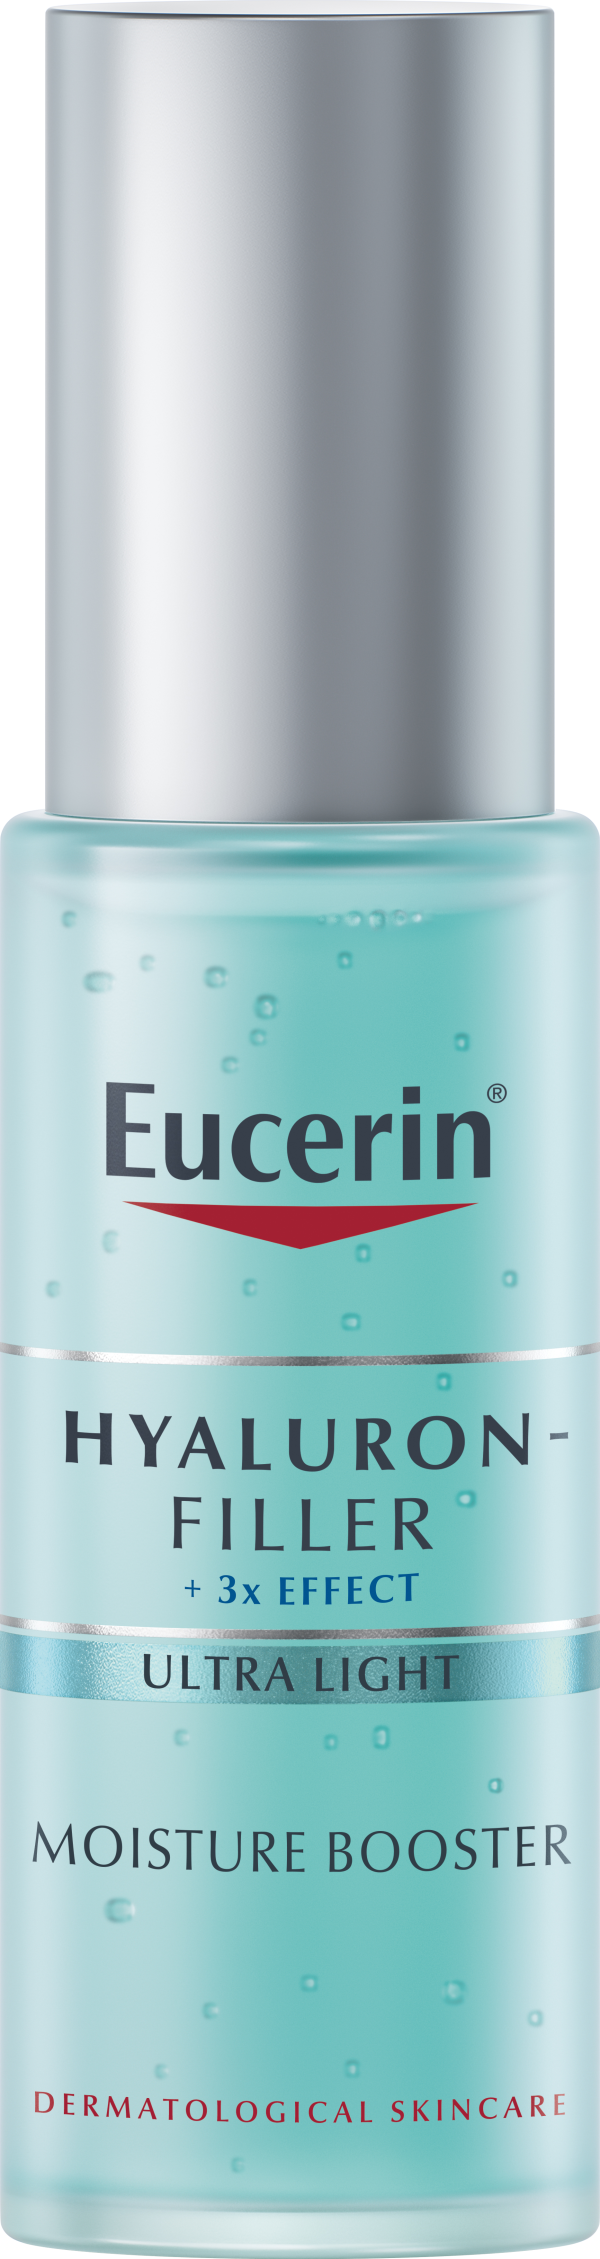 Eucerin Hyaluron-filler Moisture Booster 30 ml